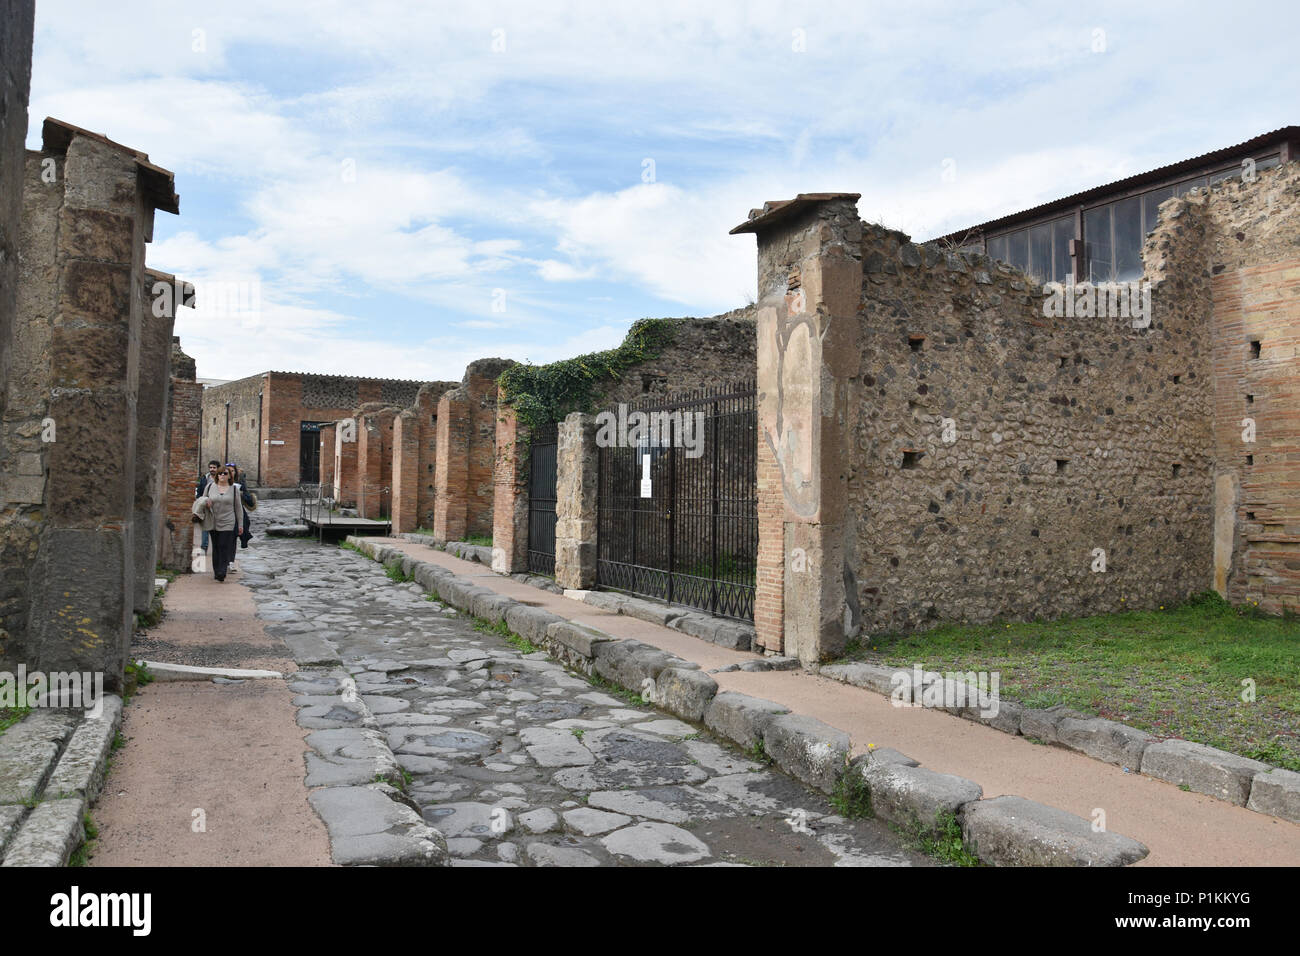 Alte Straßen mit Rad Nuten von Karren in der antiken Stadt Pompeji, Italien. Stockfoto